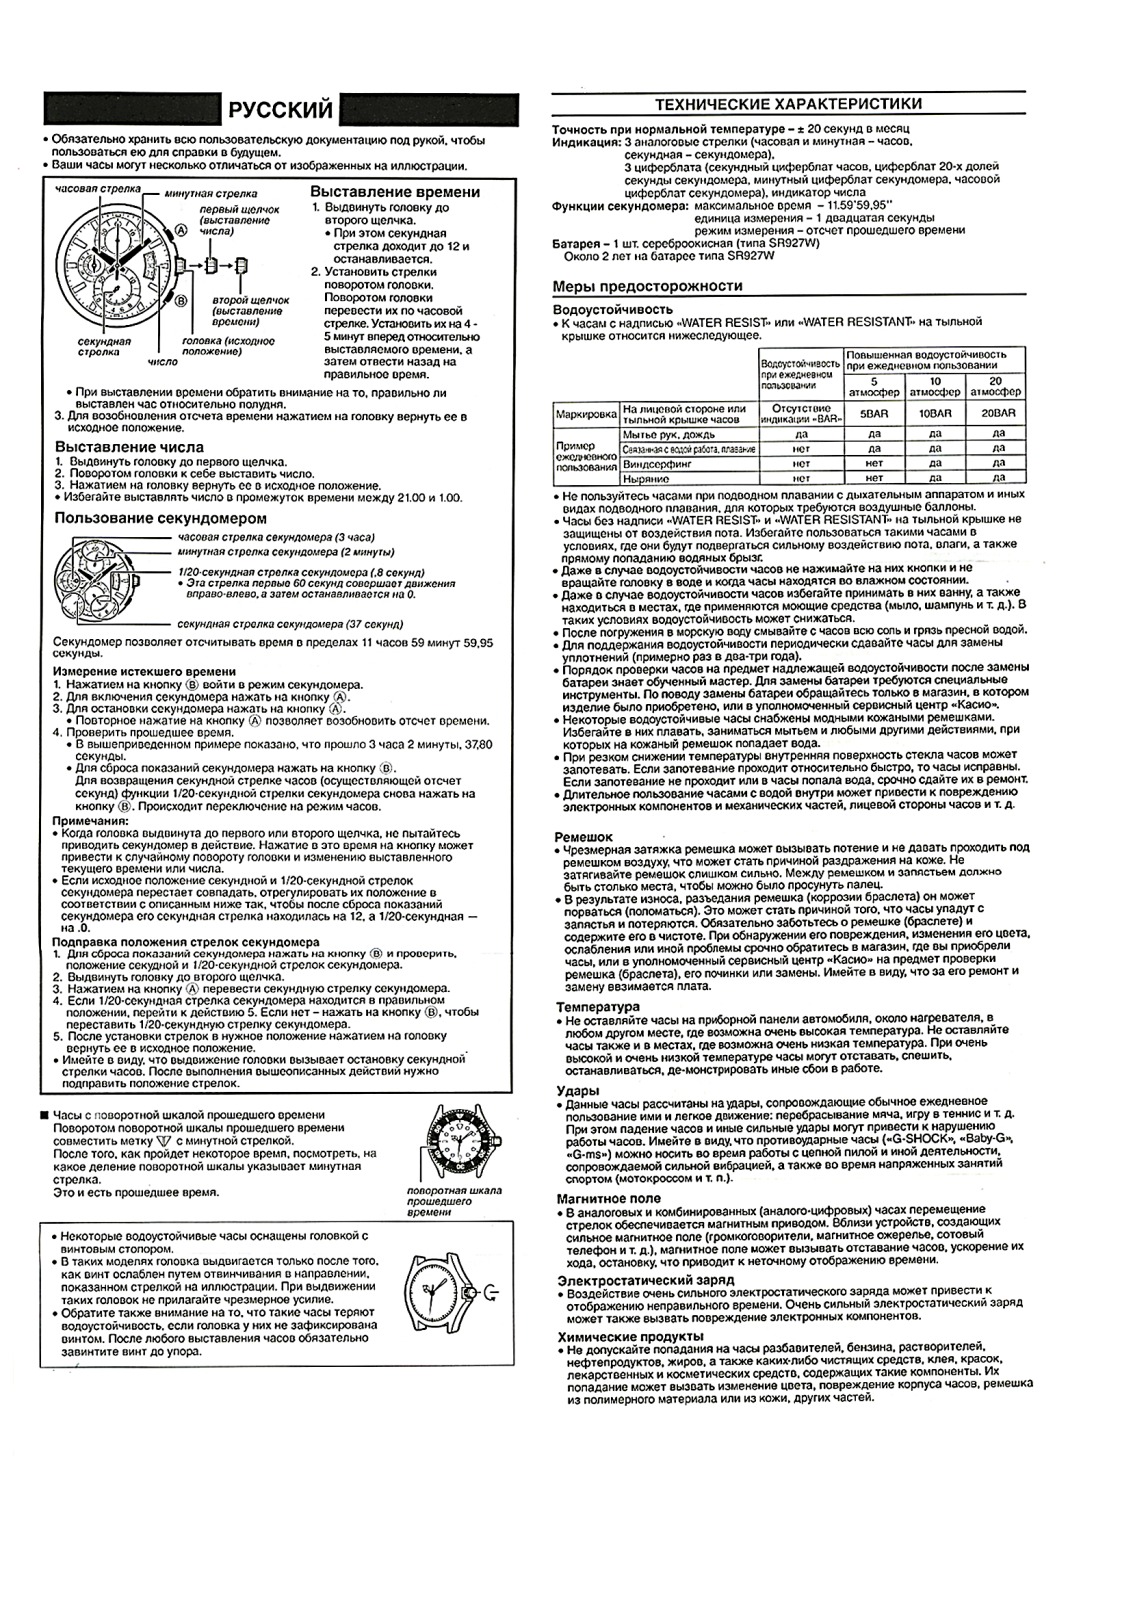 CASIO EF-555 User Manual